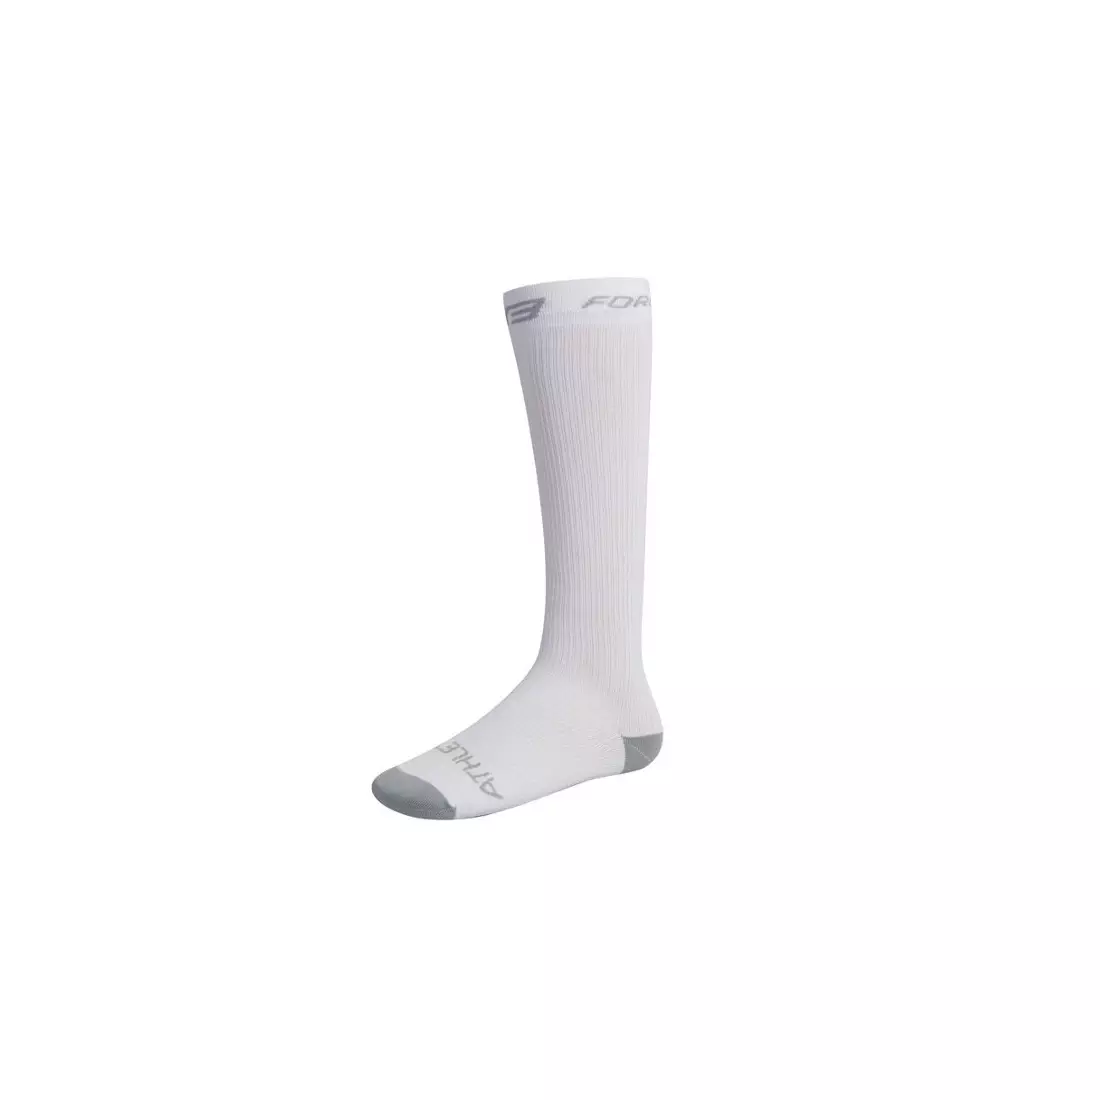 FORCE kompressziós zokni 90103, szín: fehér